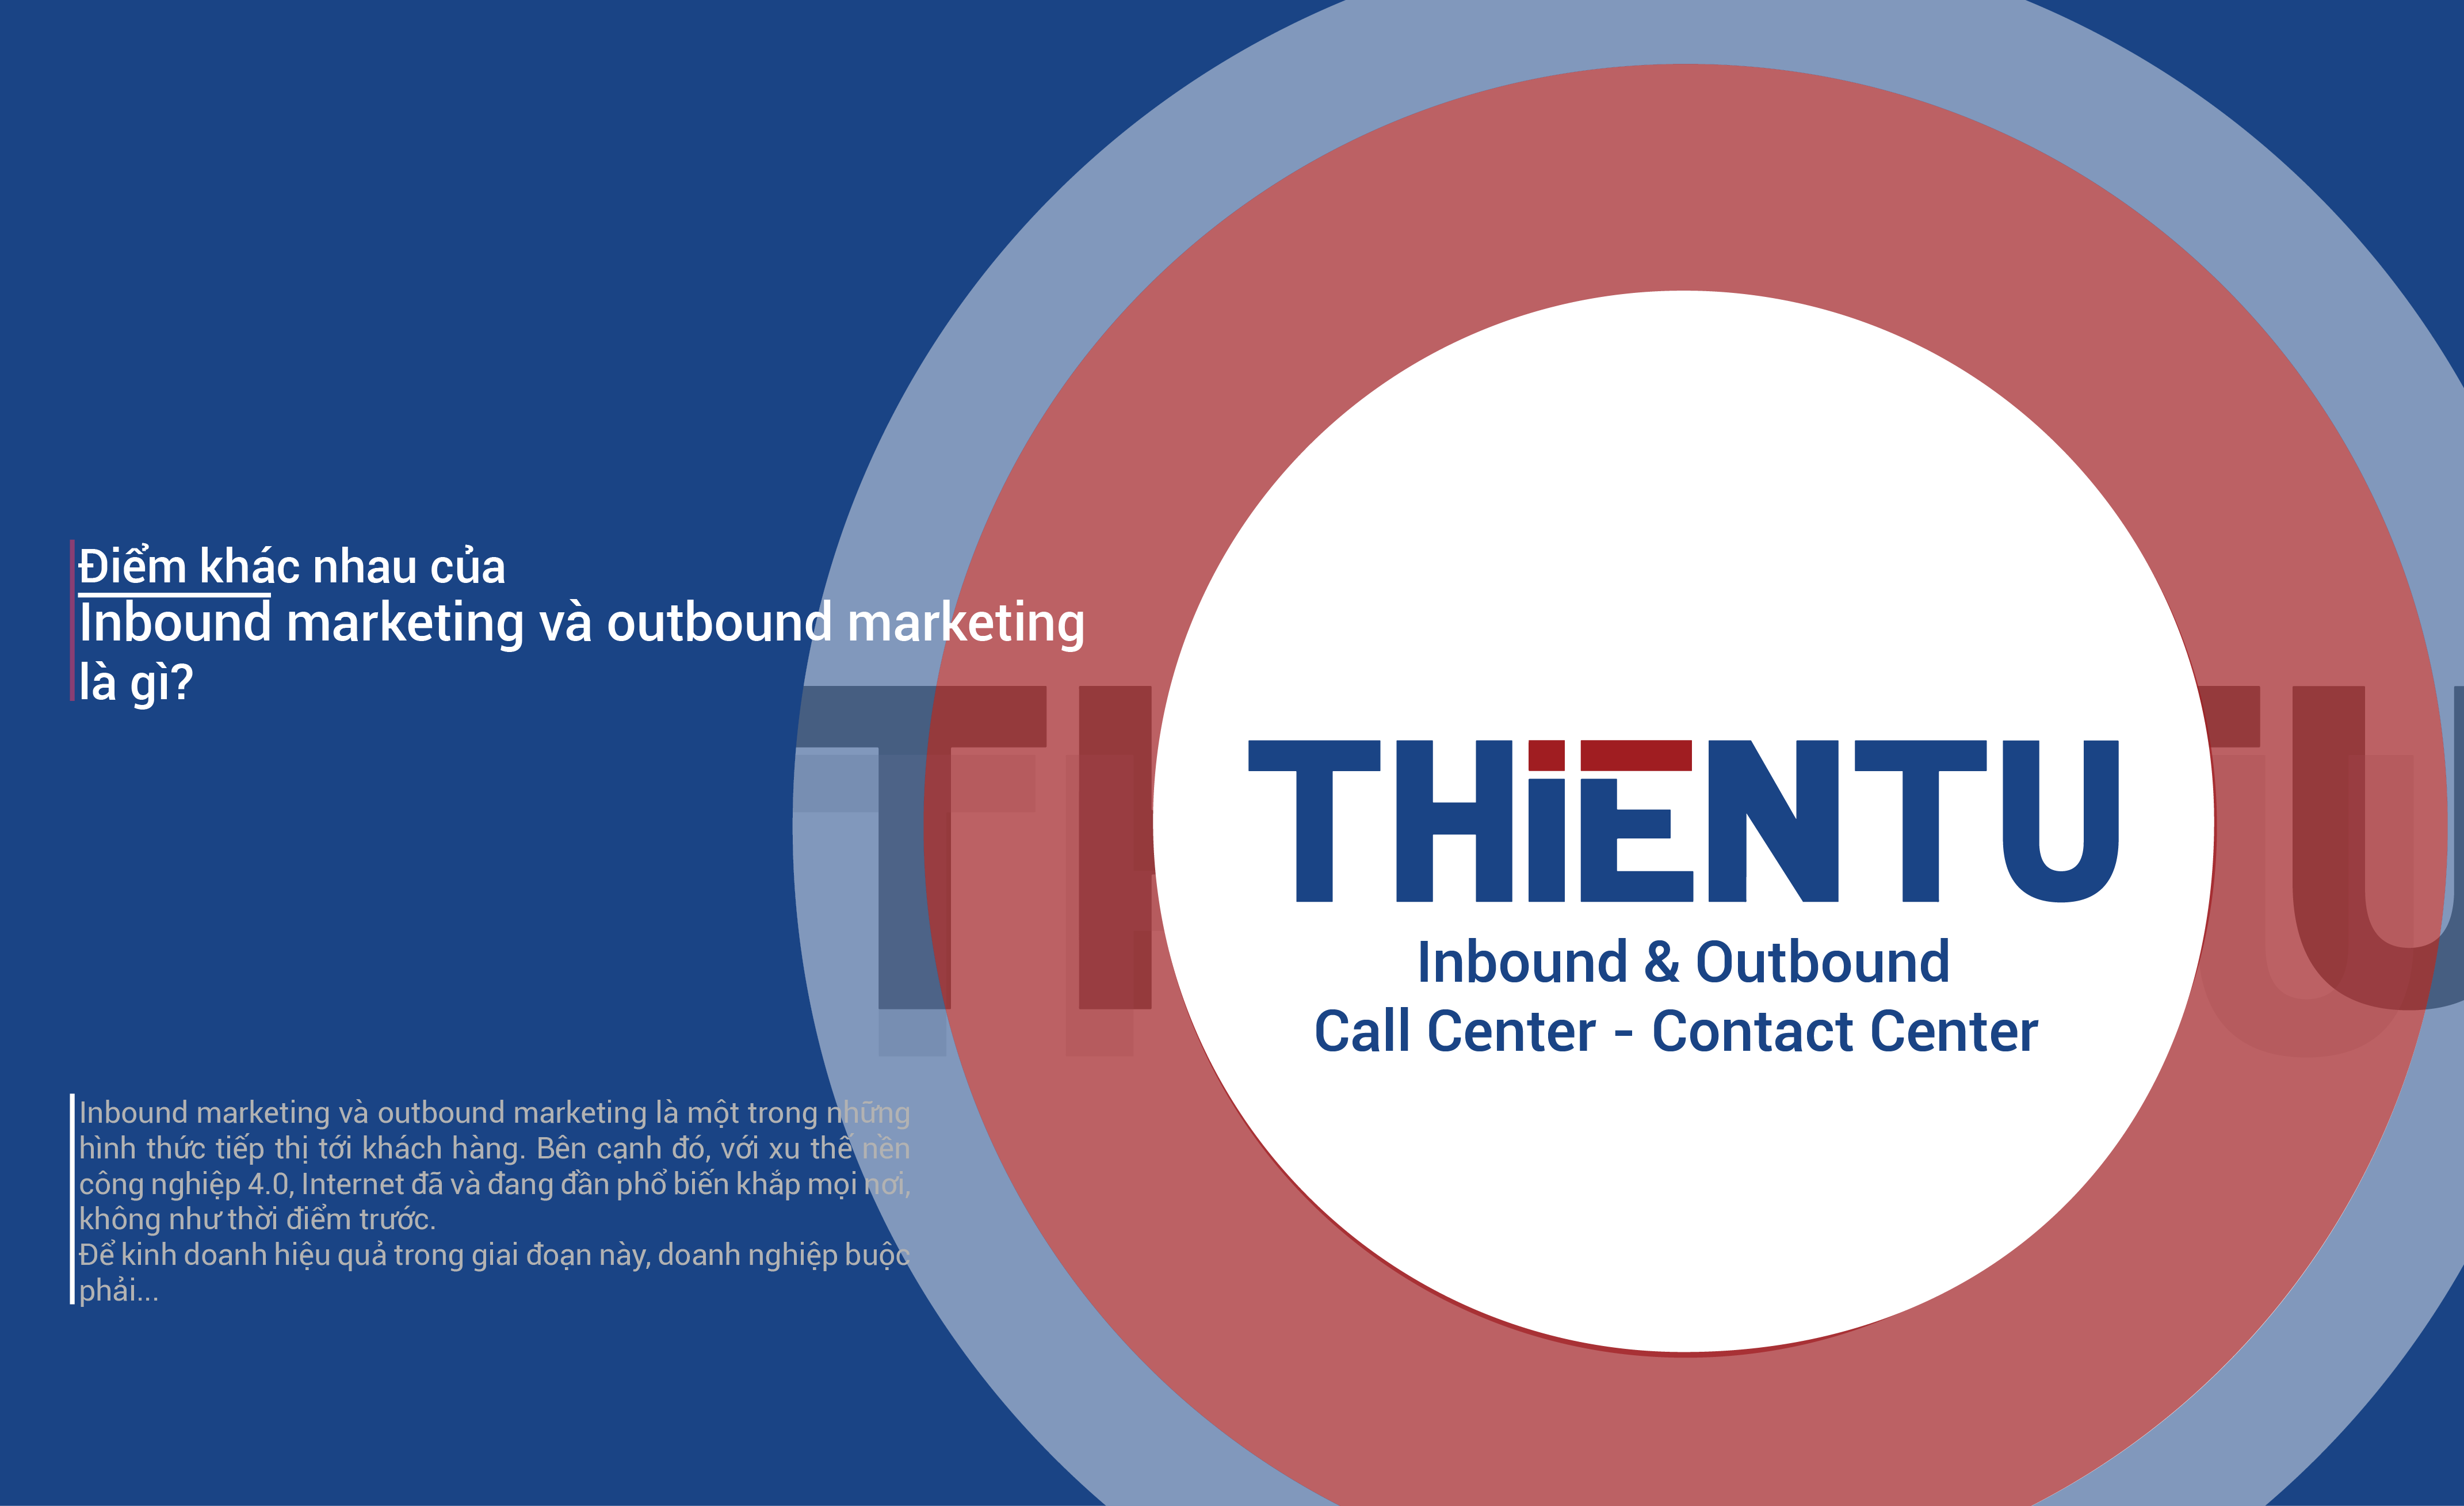 Điểm khác nhau của inbound marketing và outbound marketing là gì?